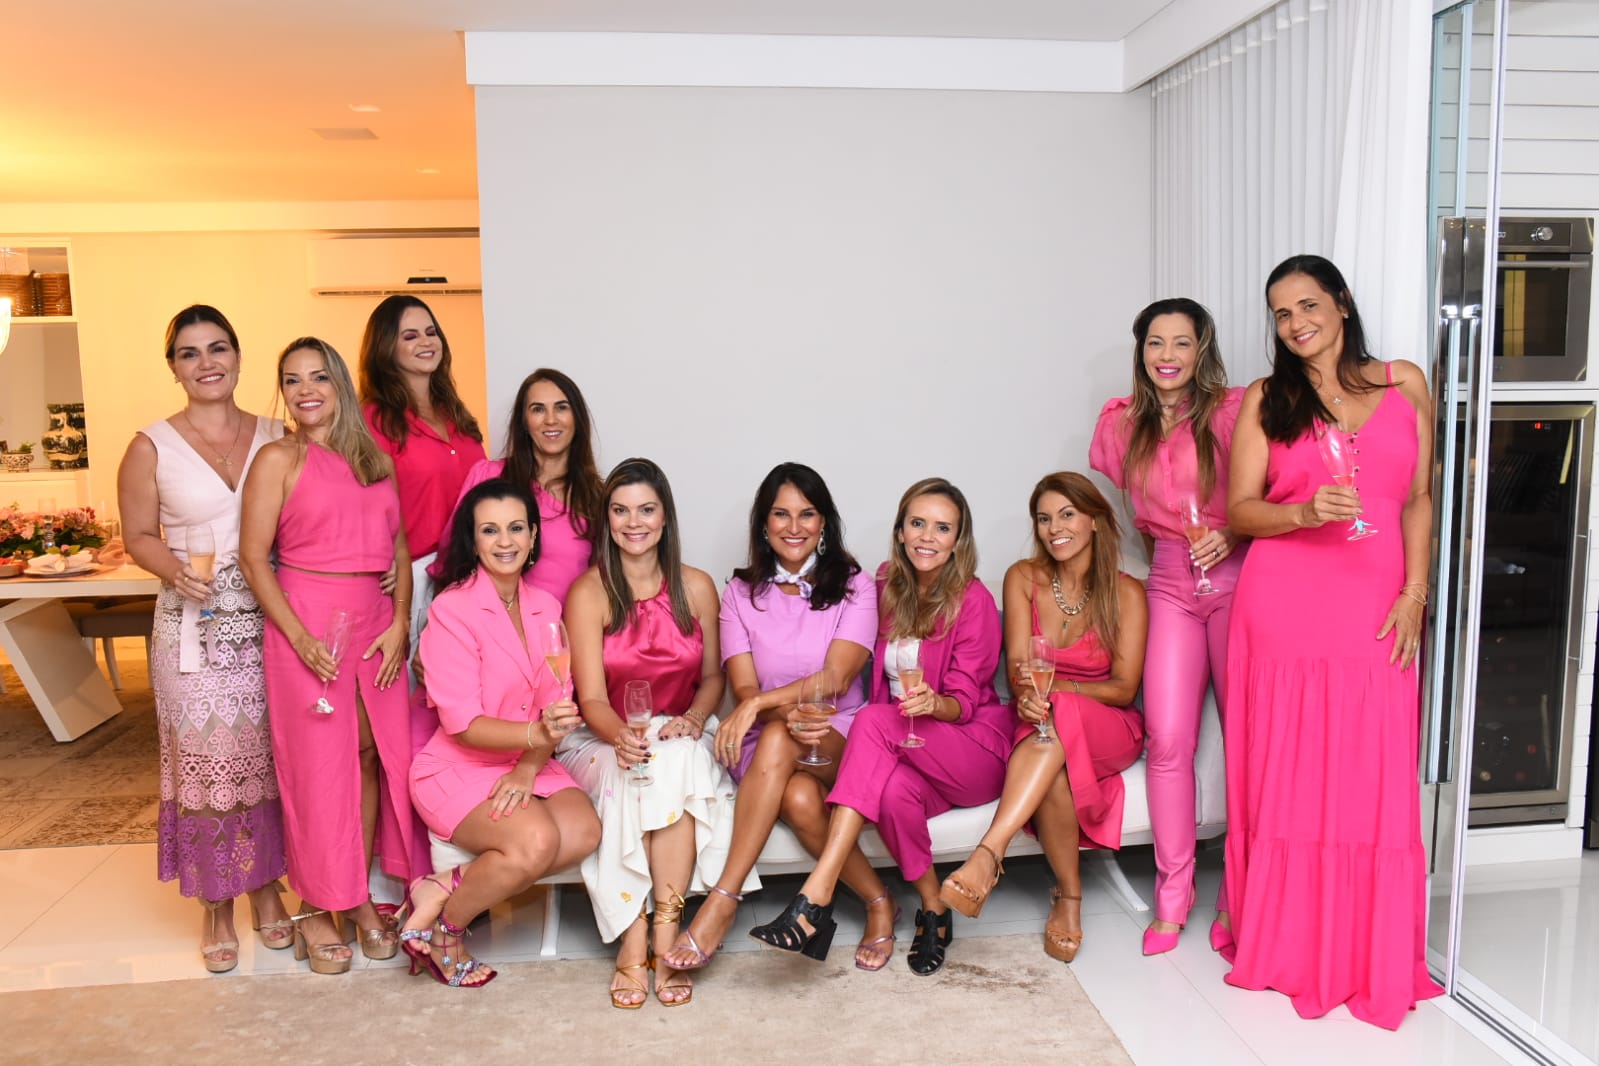 A anfitriã Tatiane Emerich recebeu a ConfraDelas para um Pink Dinner nesta quarta-feira (01°), em seu apartamento, em Vitória